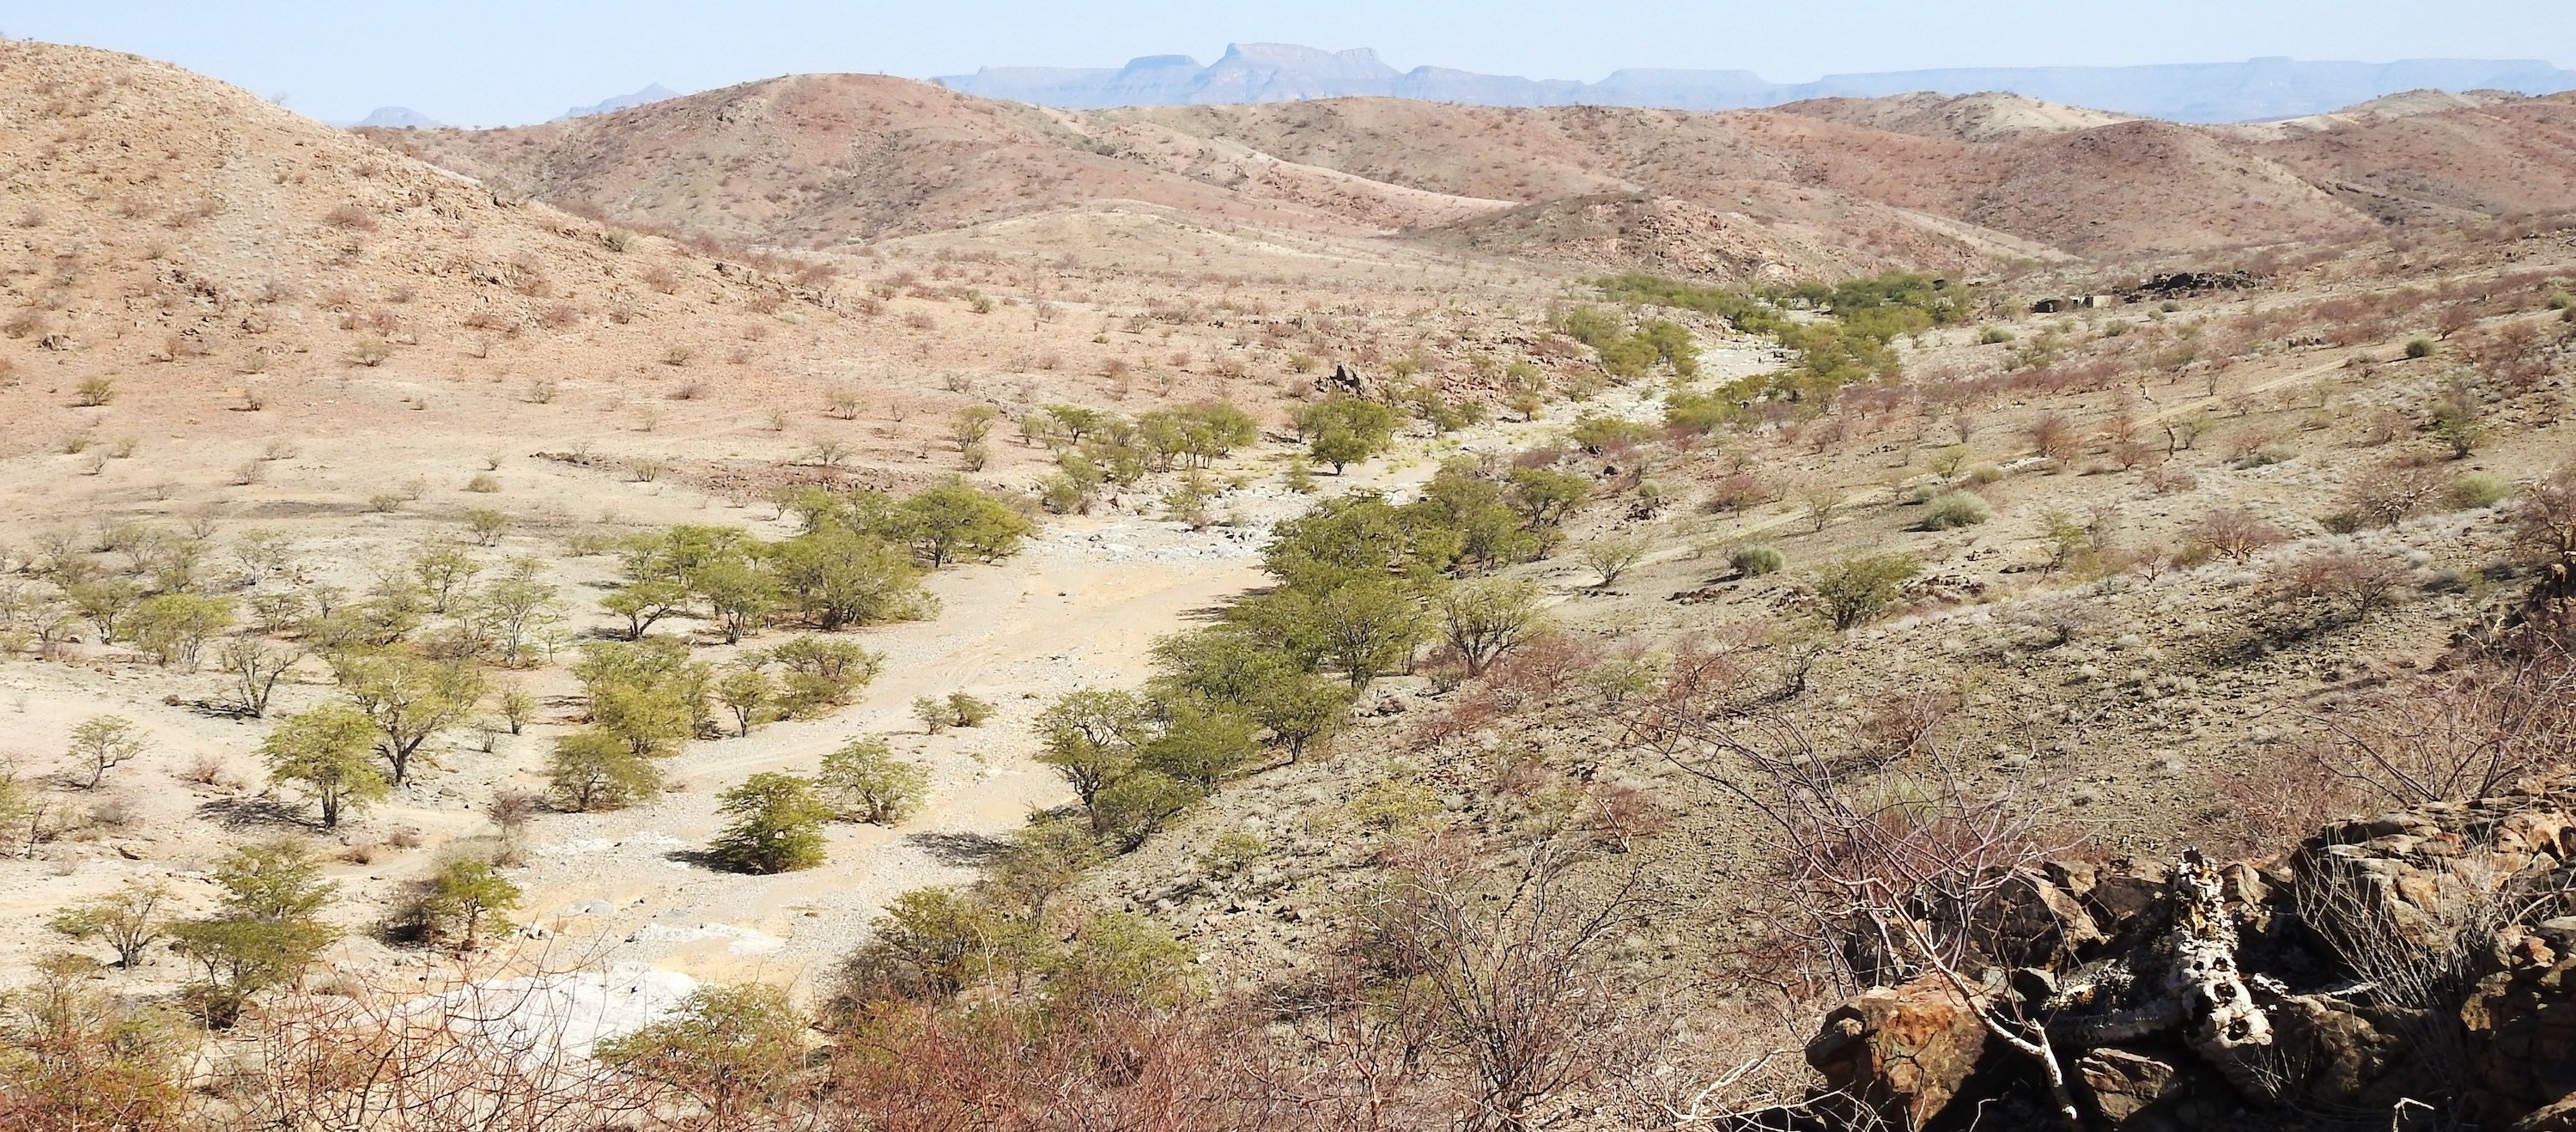 The rocky desert landscape of the Kunene region.